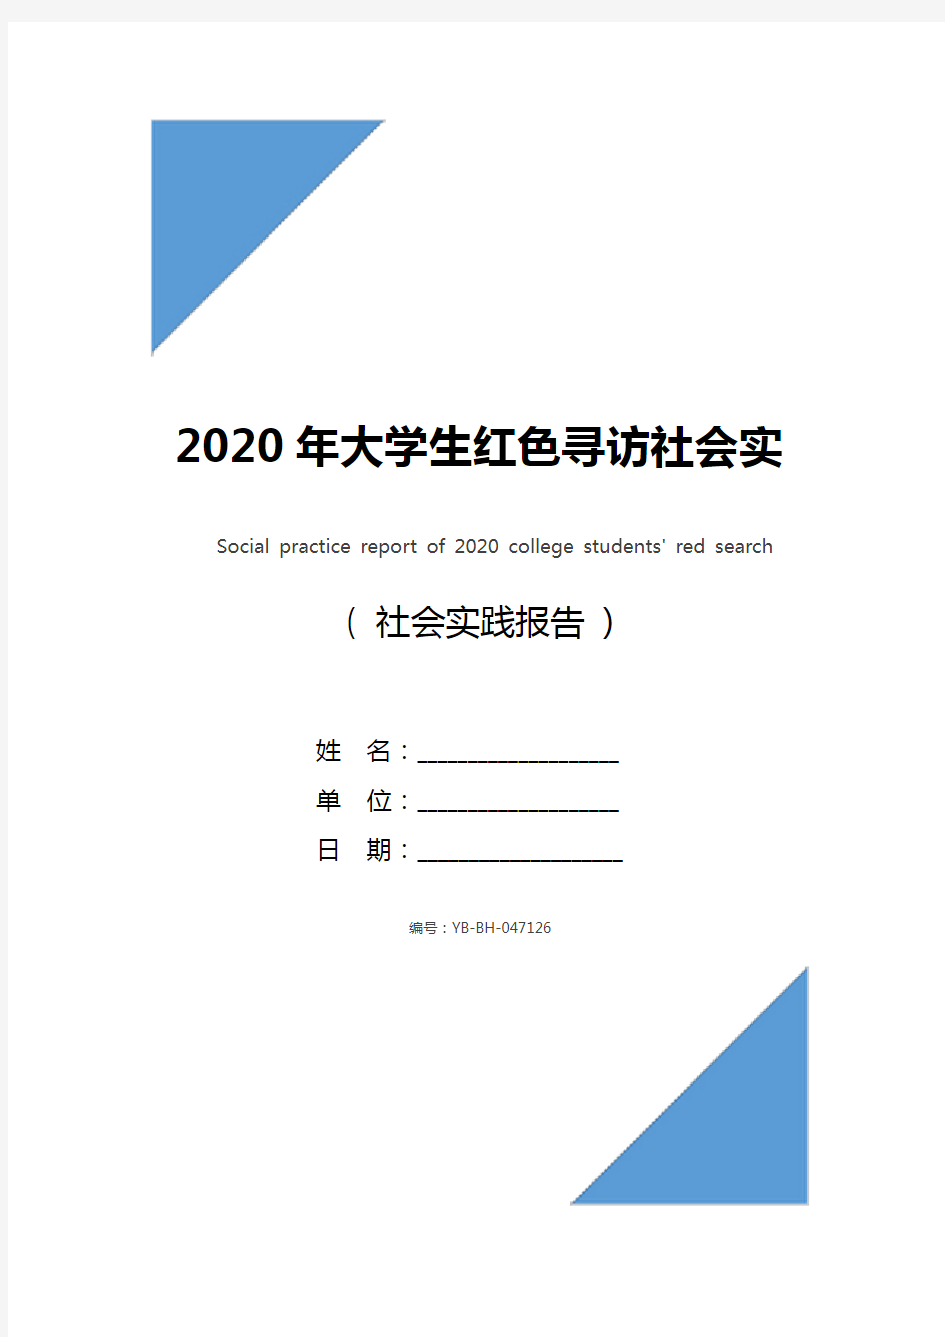 2020年大学生红色寻访社会实践报告